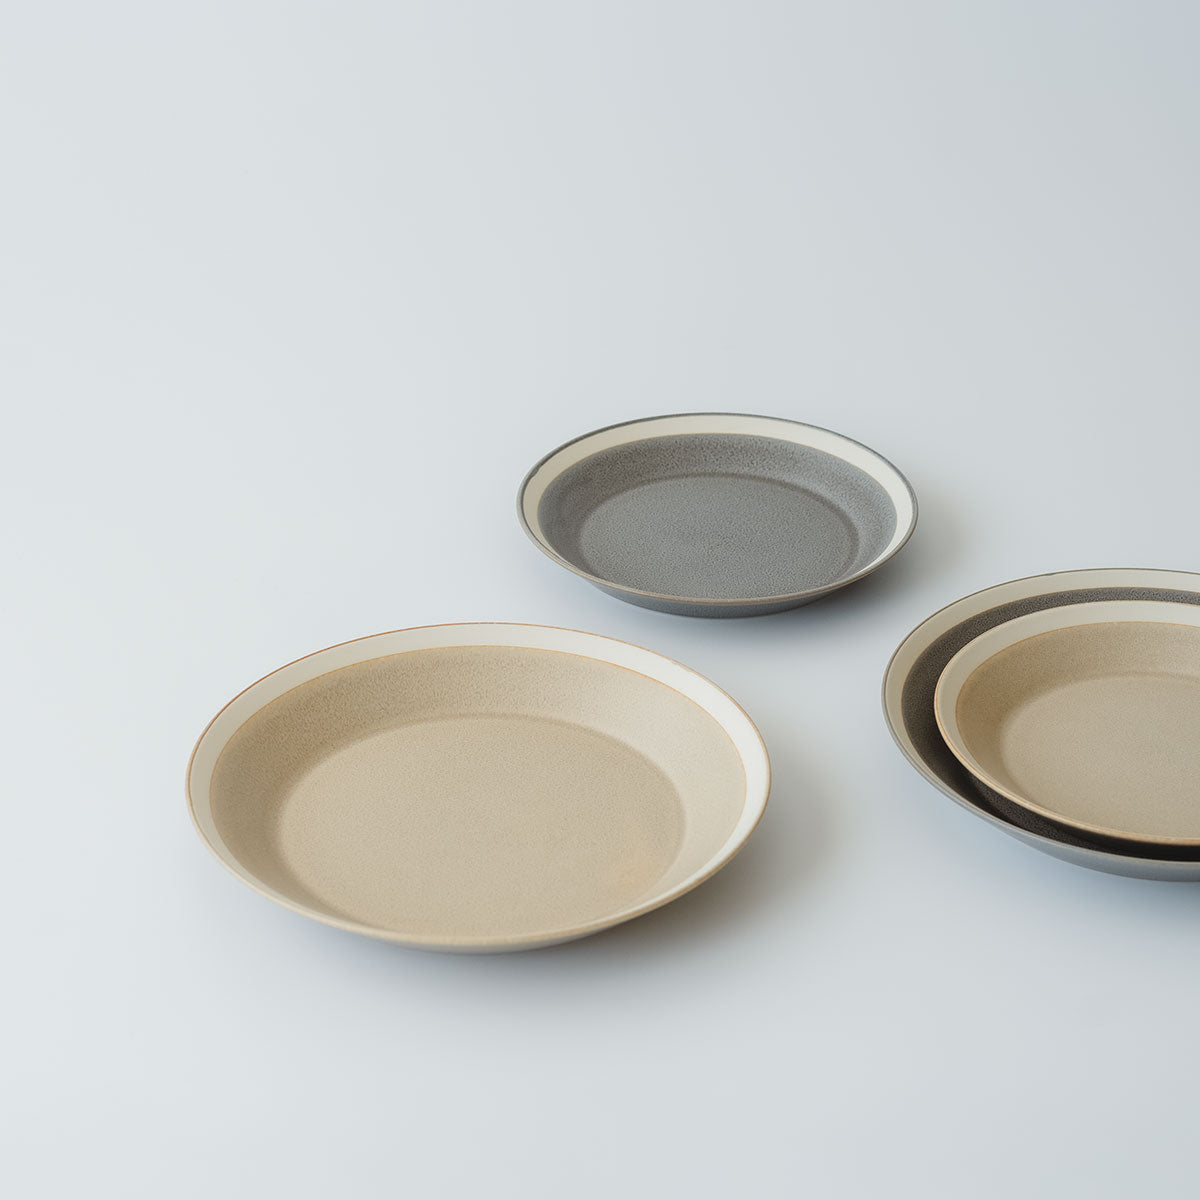 yumiko iihoshi porcelain × 木村硝子店 | dishes plate